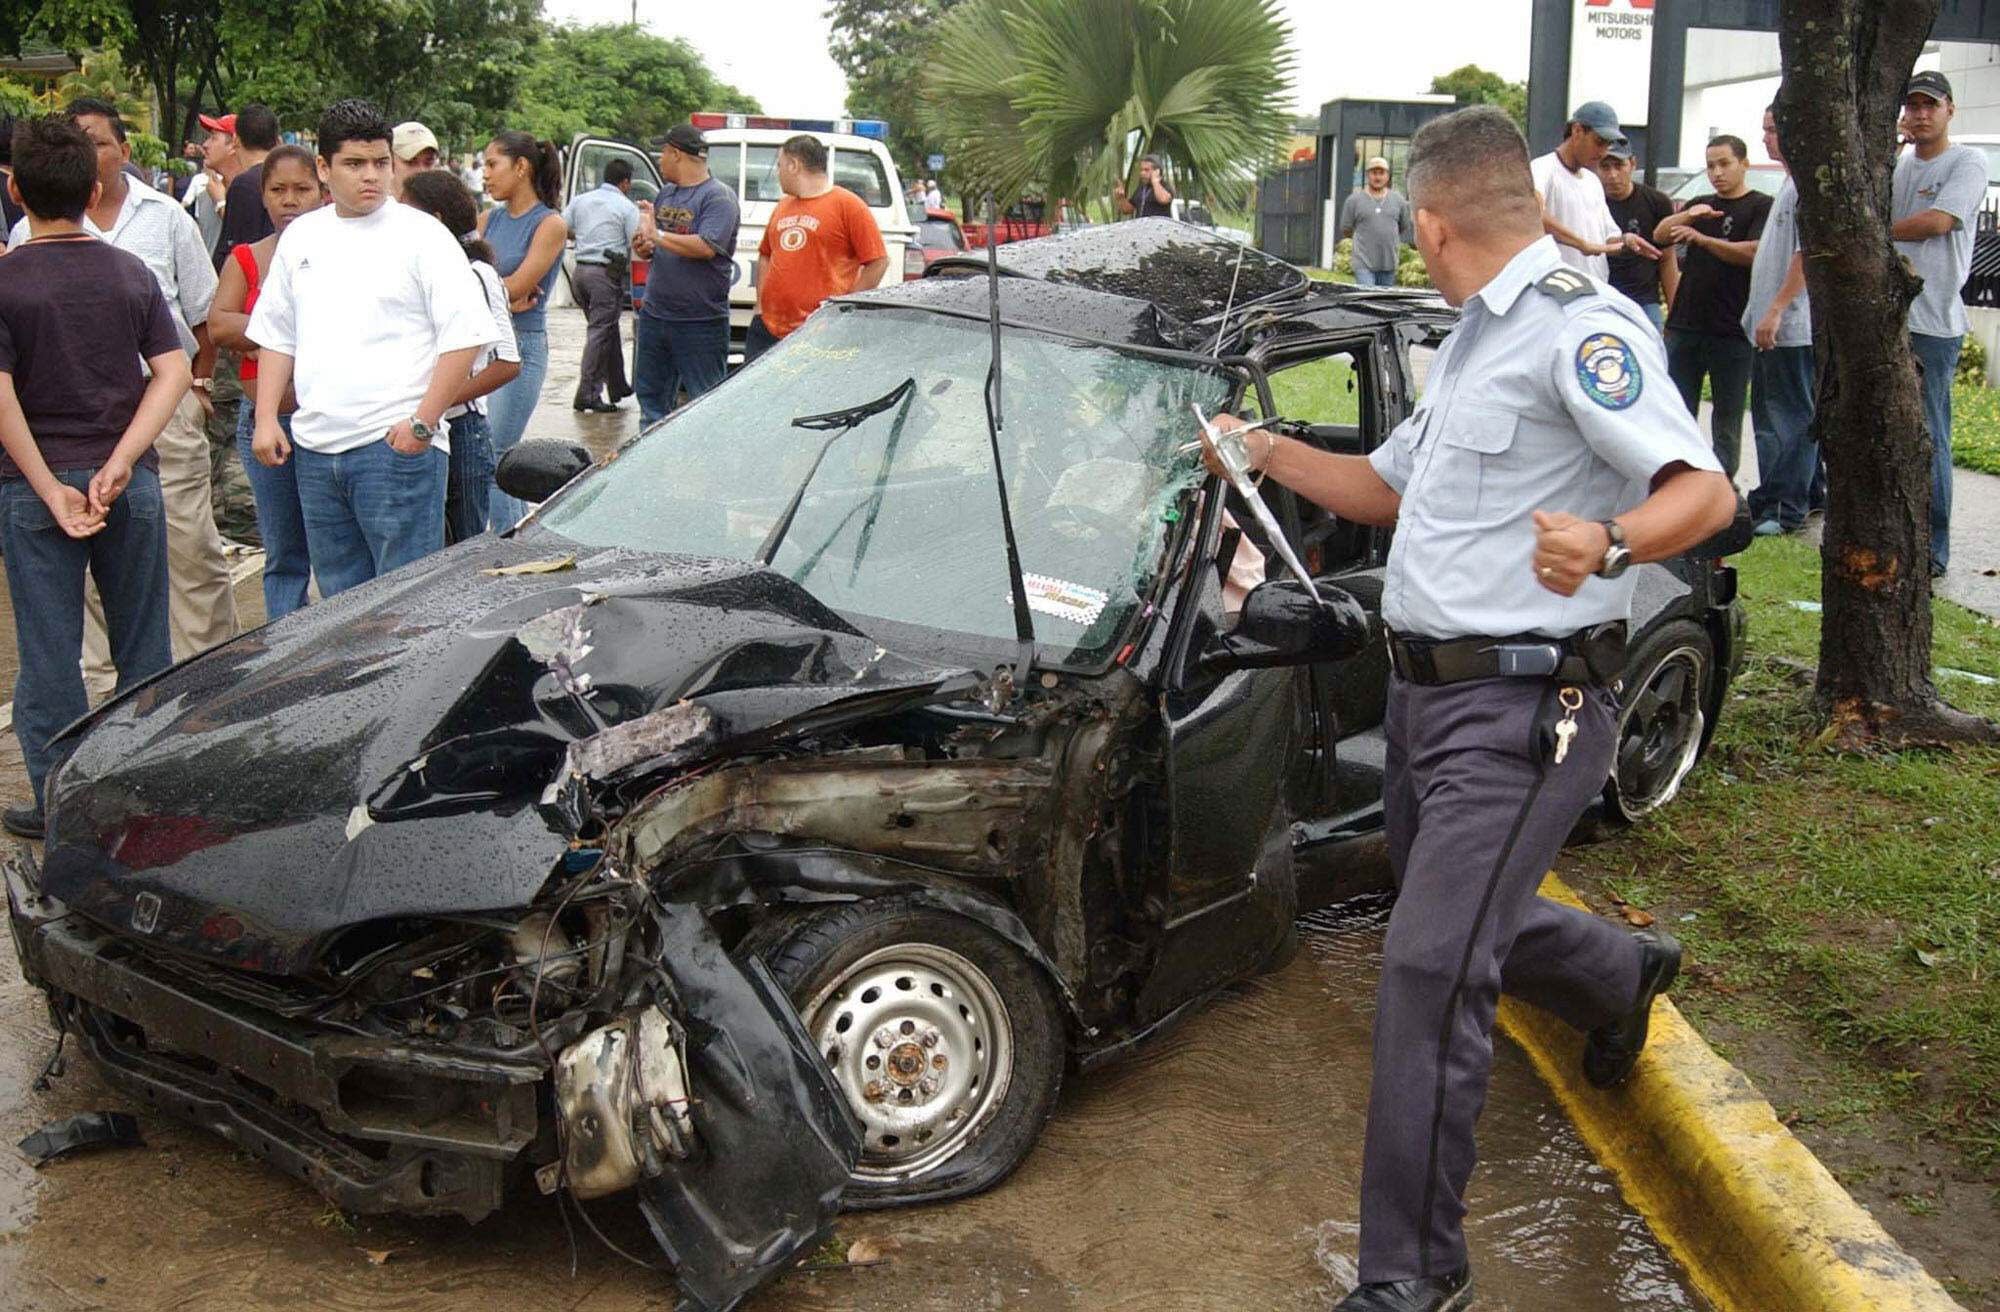 Al Menos Ocho Muertos Deja Un Accidente De Tráfico En La Región Central De Honduras